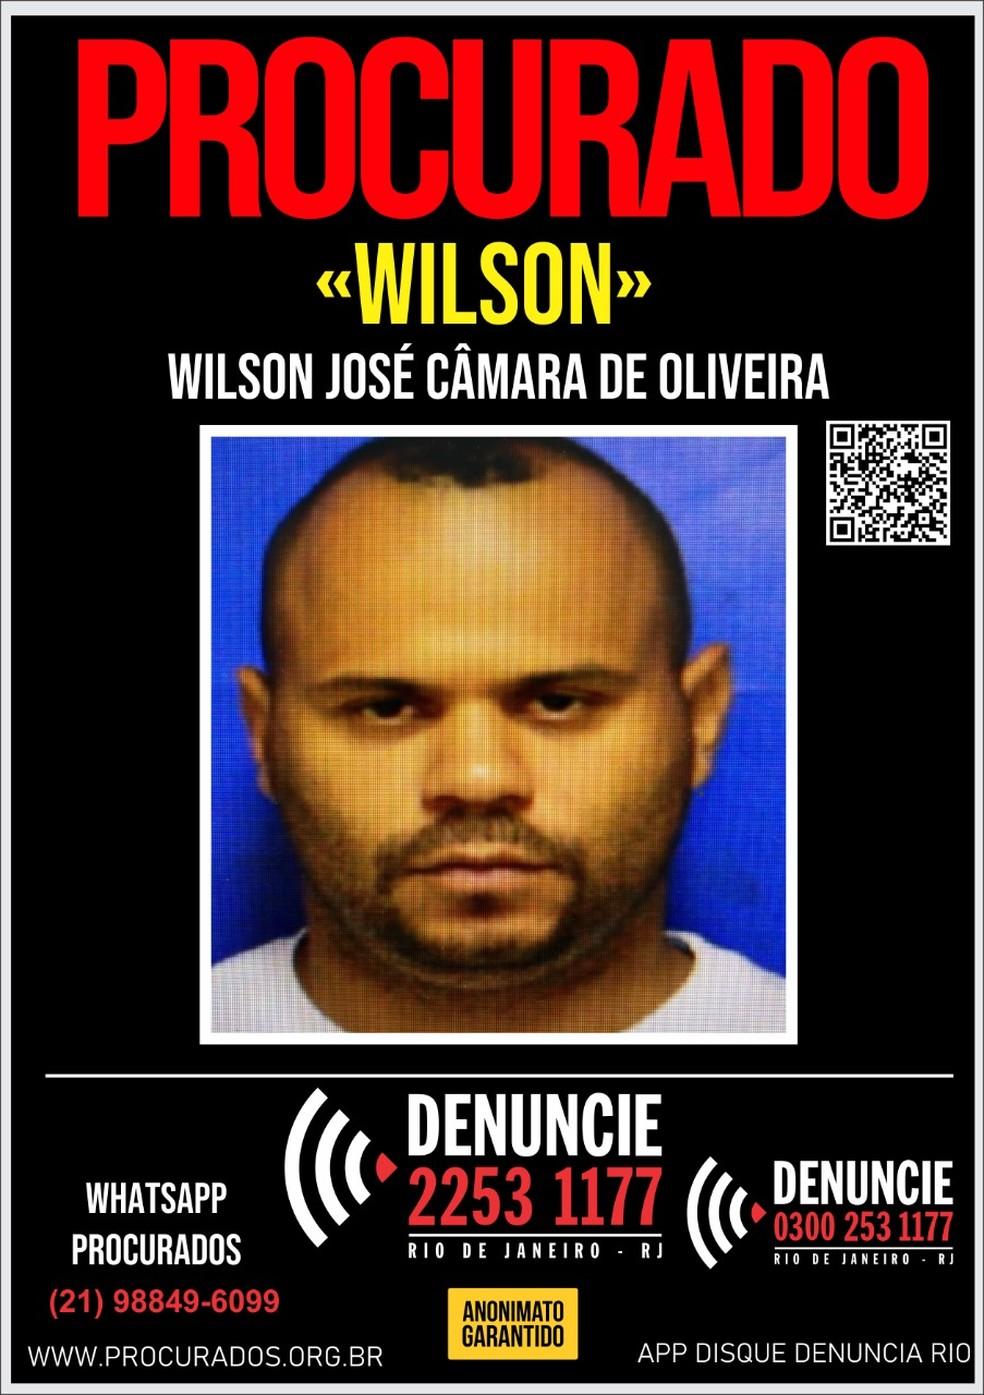 Wilson Jos Cmara de Oliveira de 37 anos suspeito pela morte do advogado Victor Stephen Coelho de 27 anos Foto Divulgao